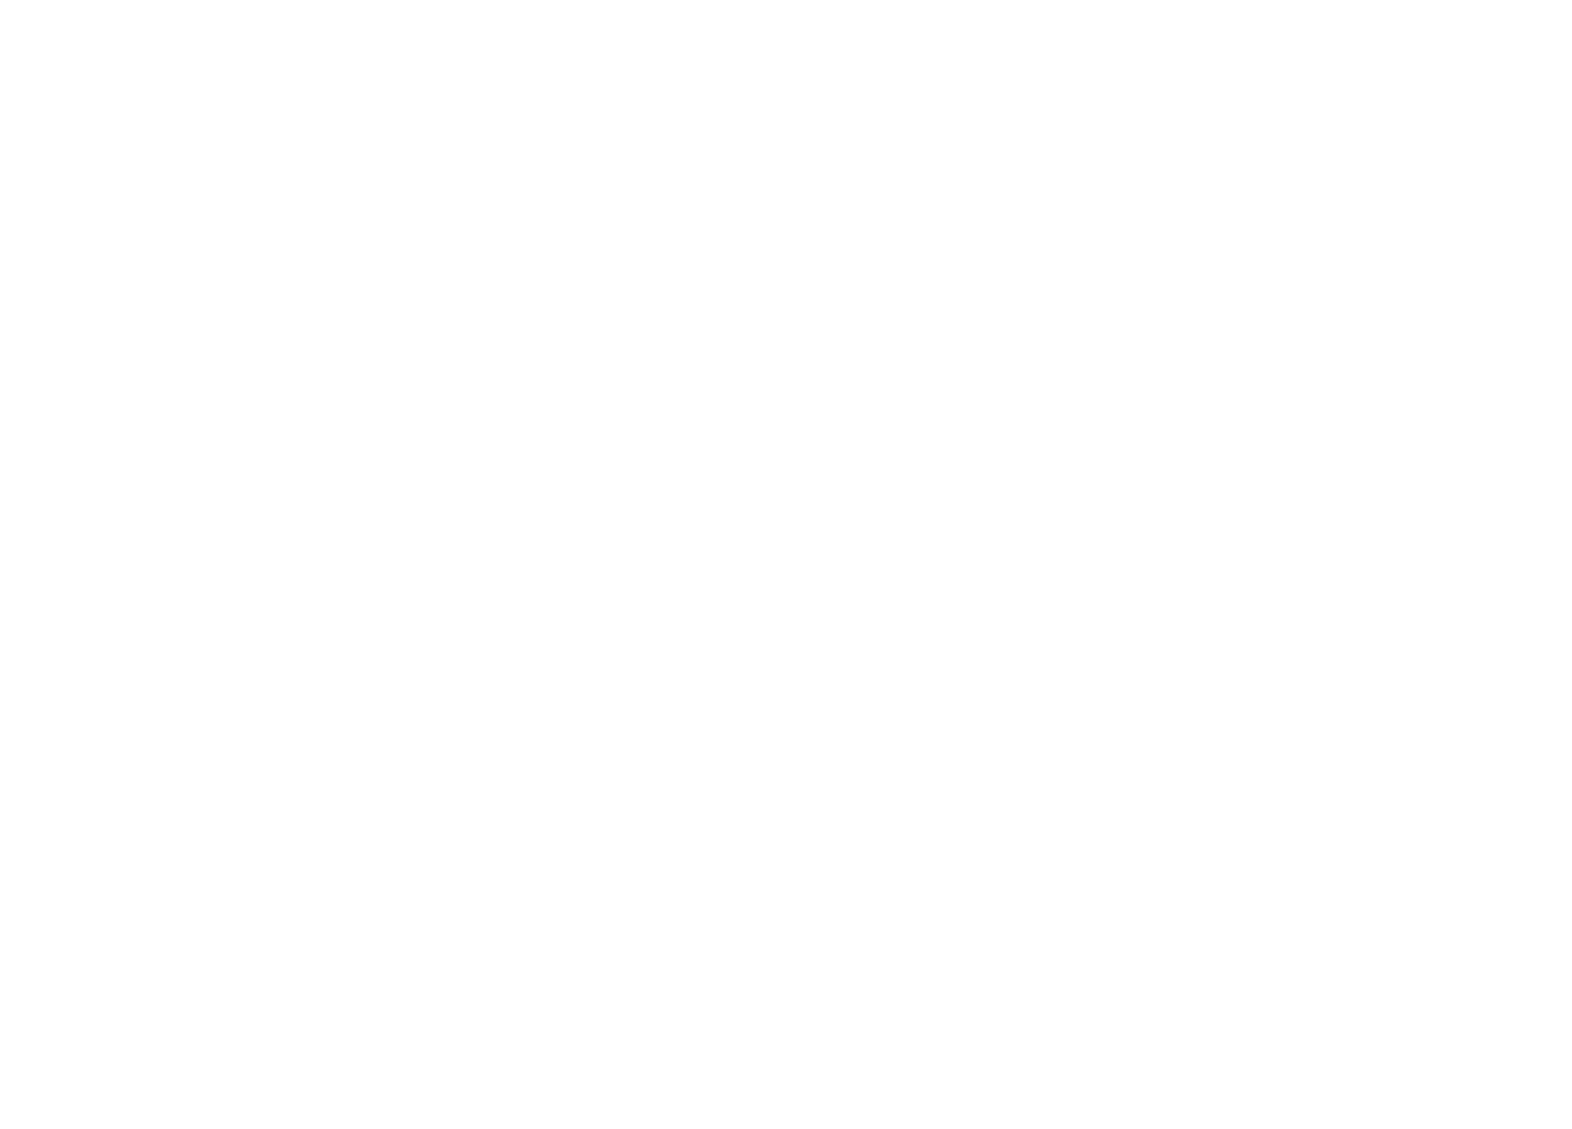 Doosan Fuel Cell logo for dark backgrounds (transparent PNG)